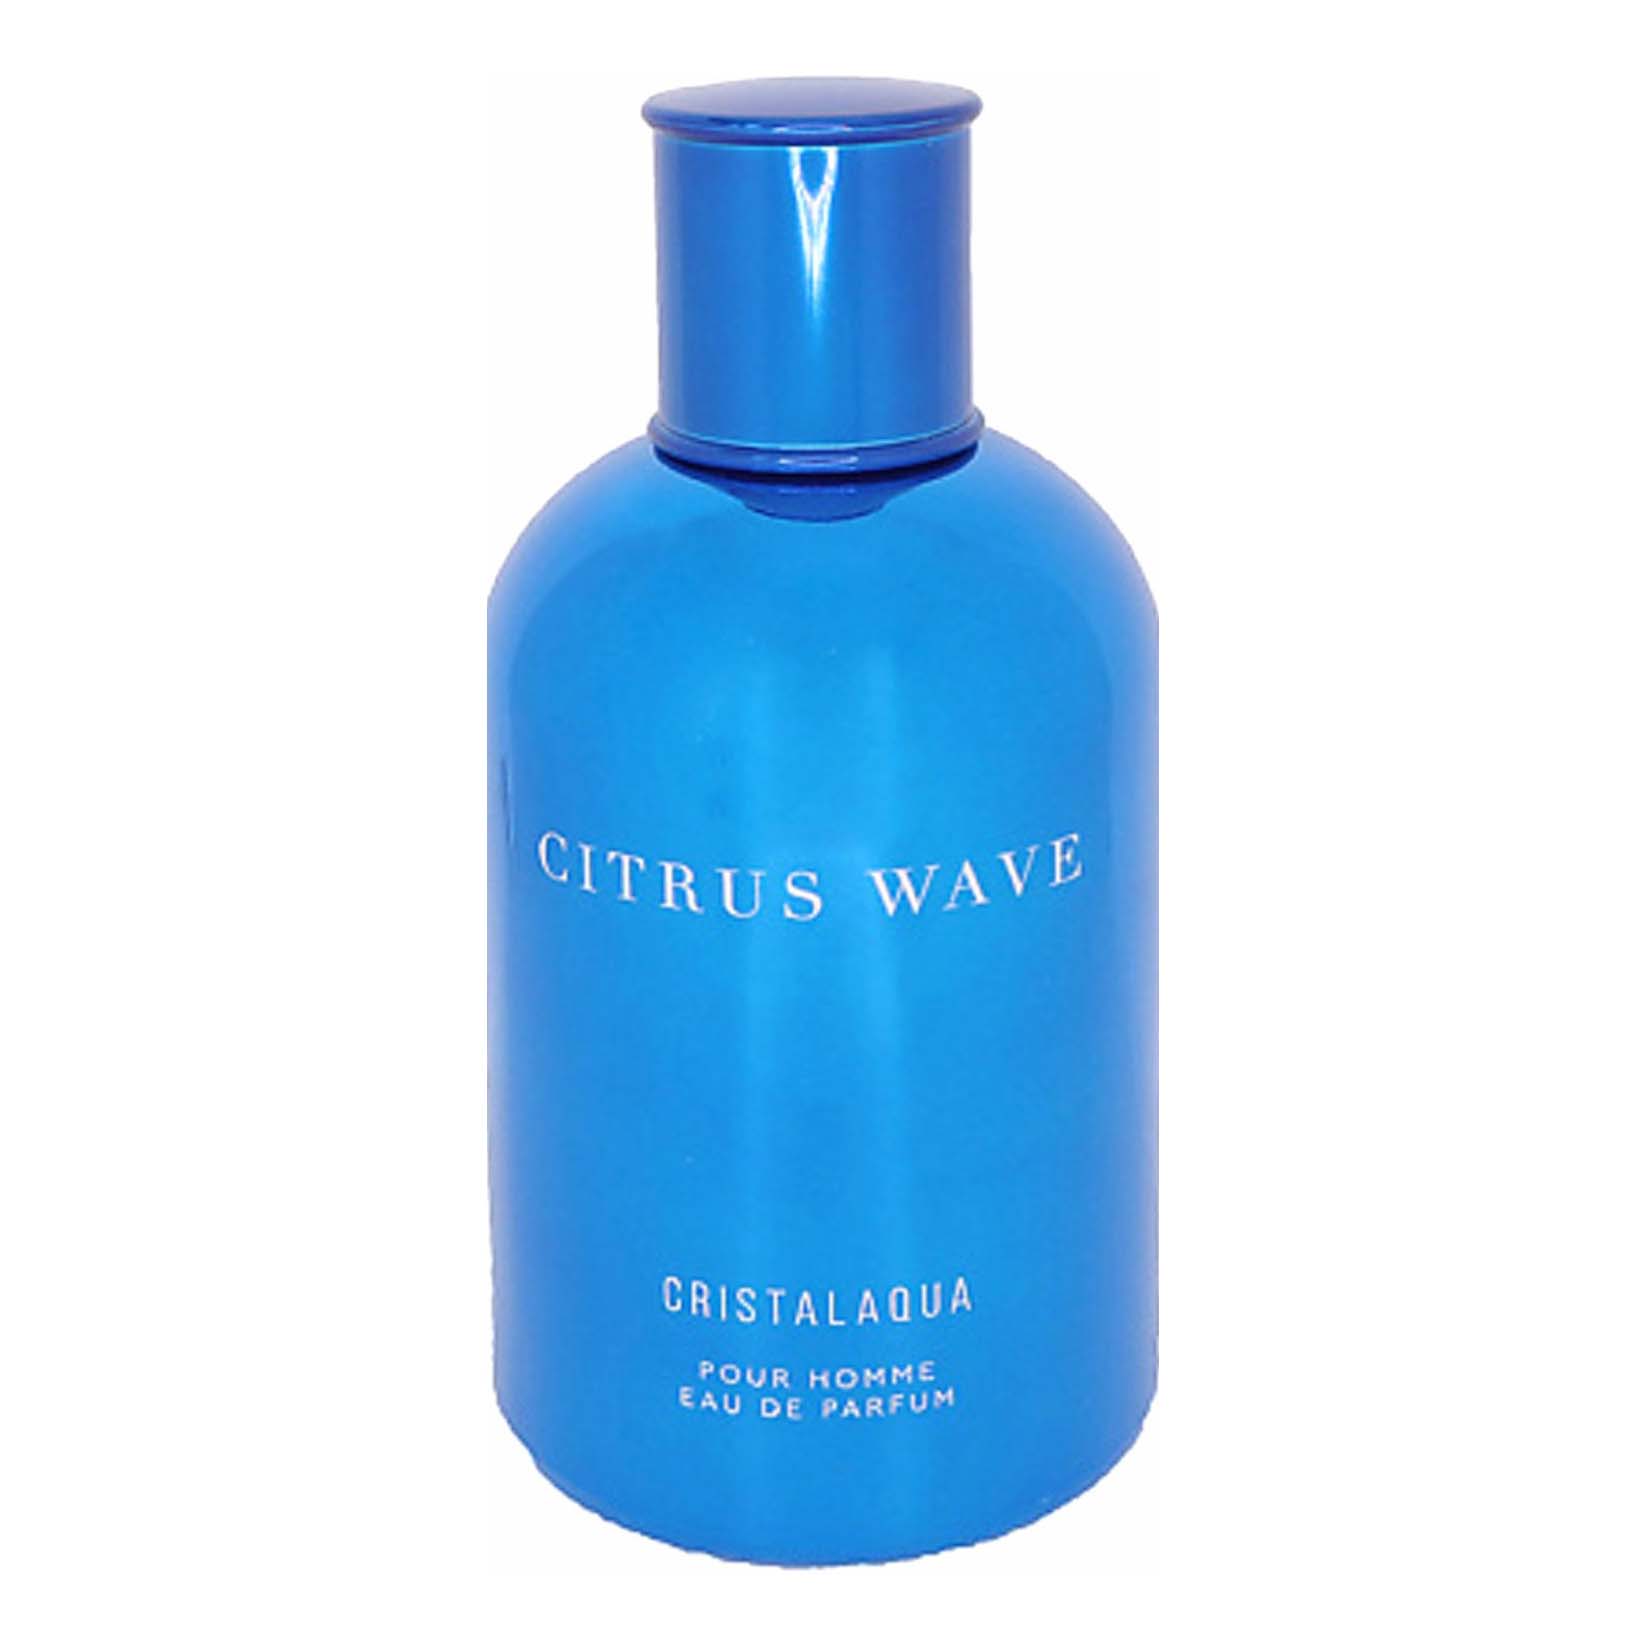 Парфюмерная вода Cristalaqua Citrus wave мужская 100 мл crystalaqua cristalaqua citrus wave 100